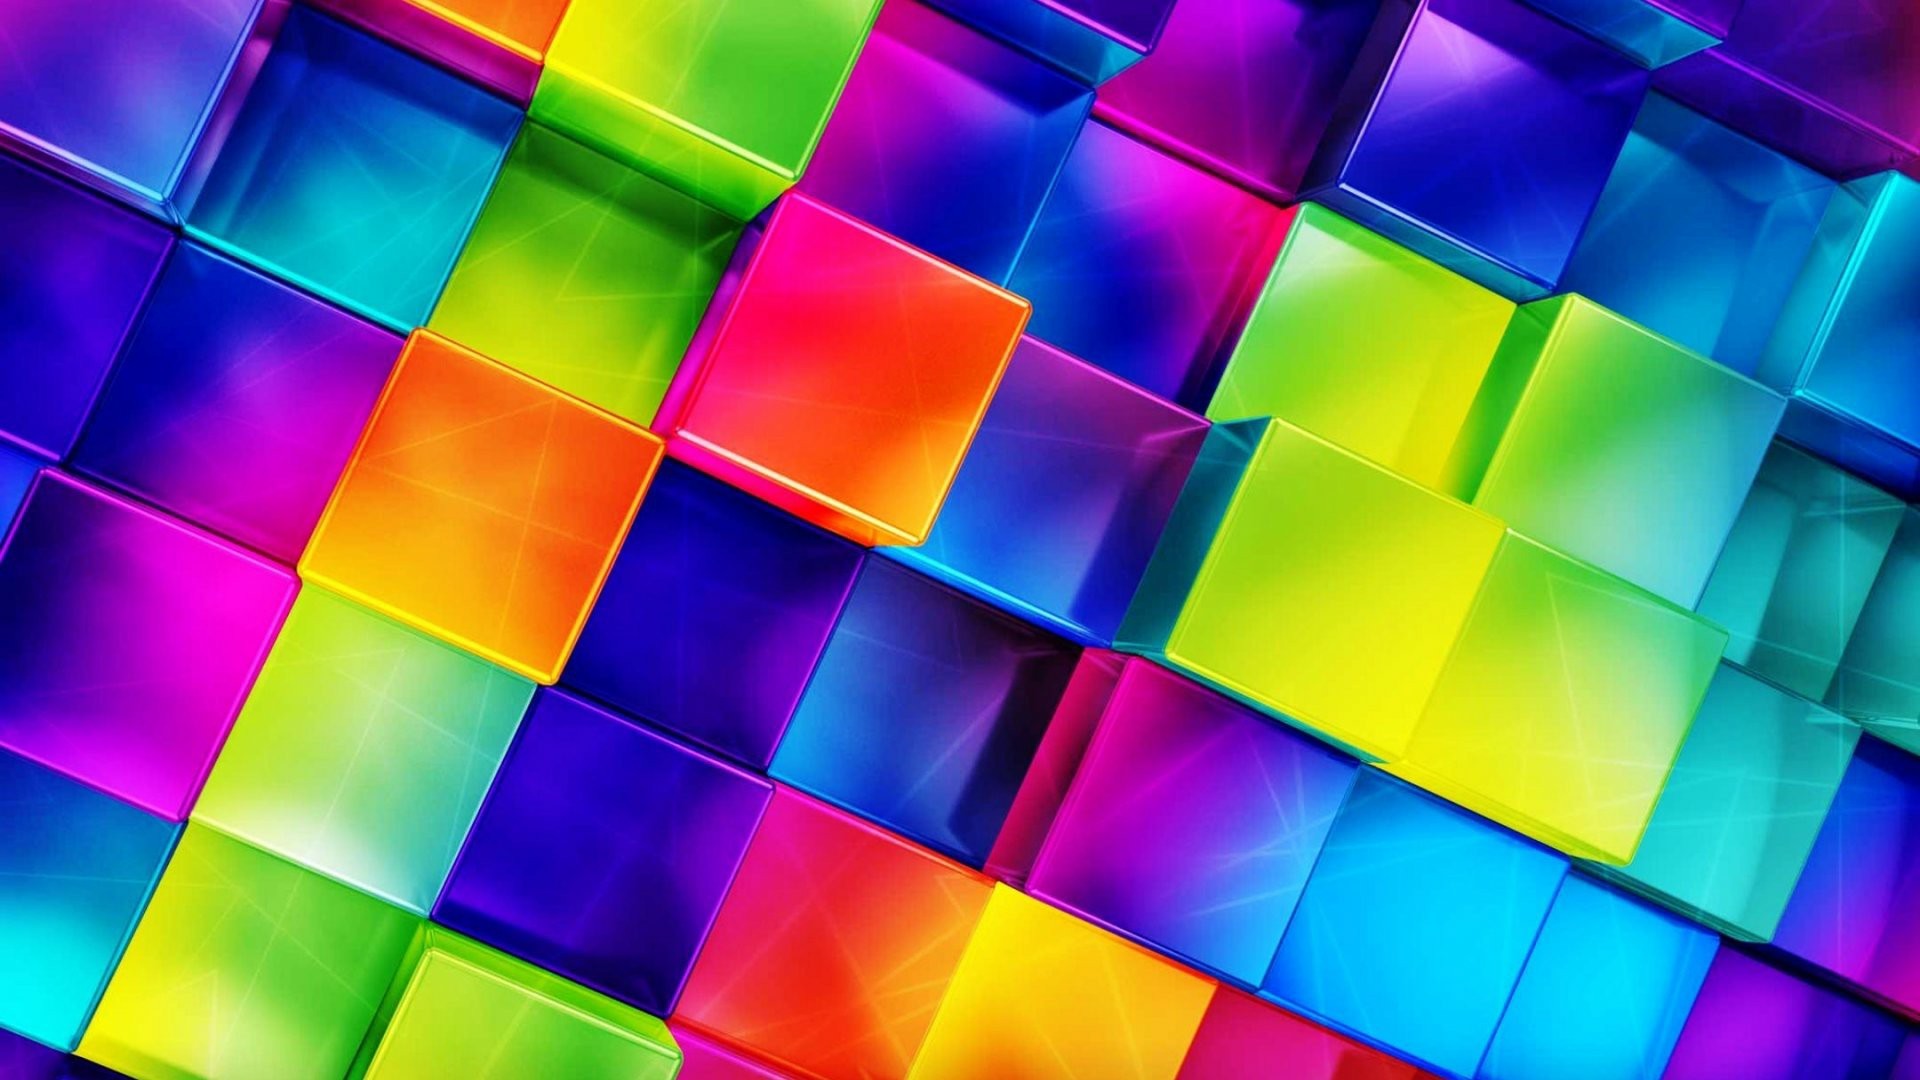 fonds d'écran lumineux et colorés,bleu,couleur,orange,lumière,violet